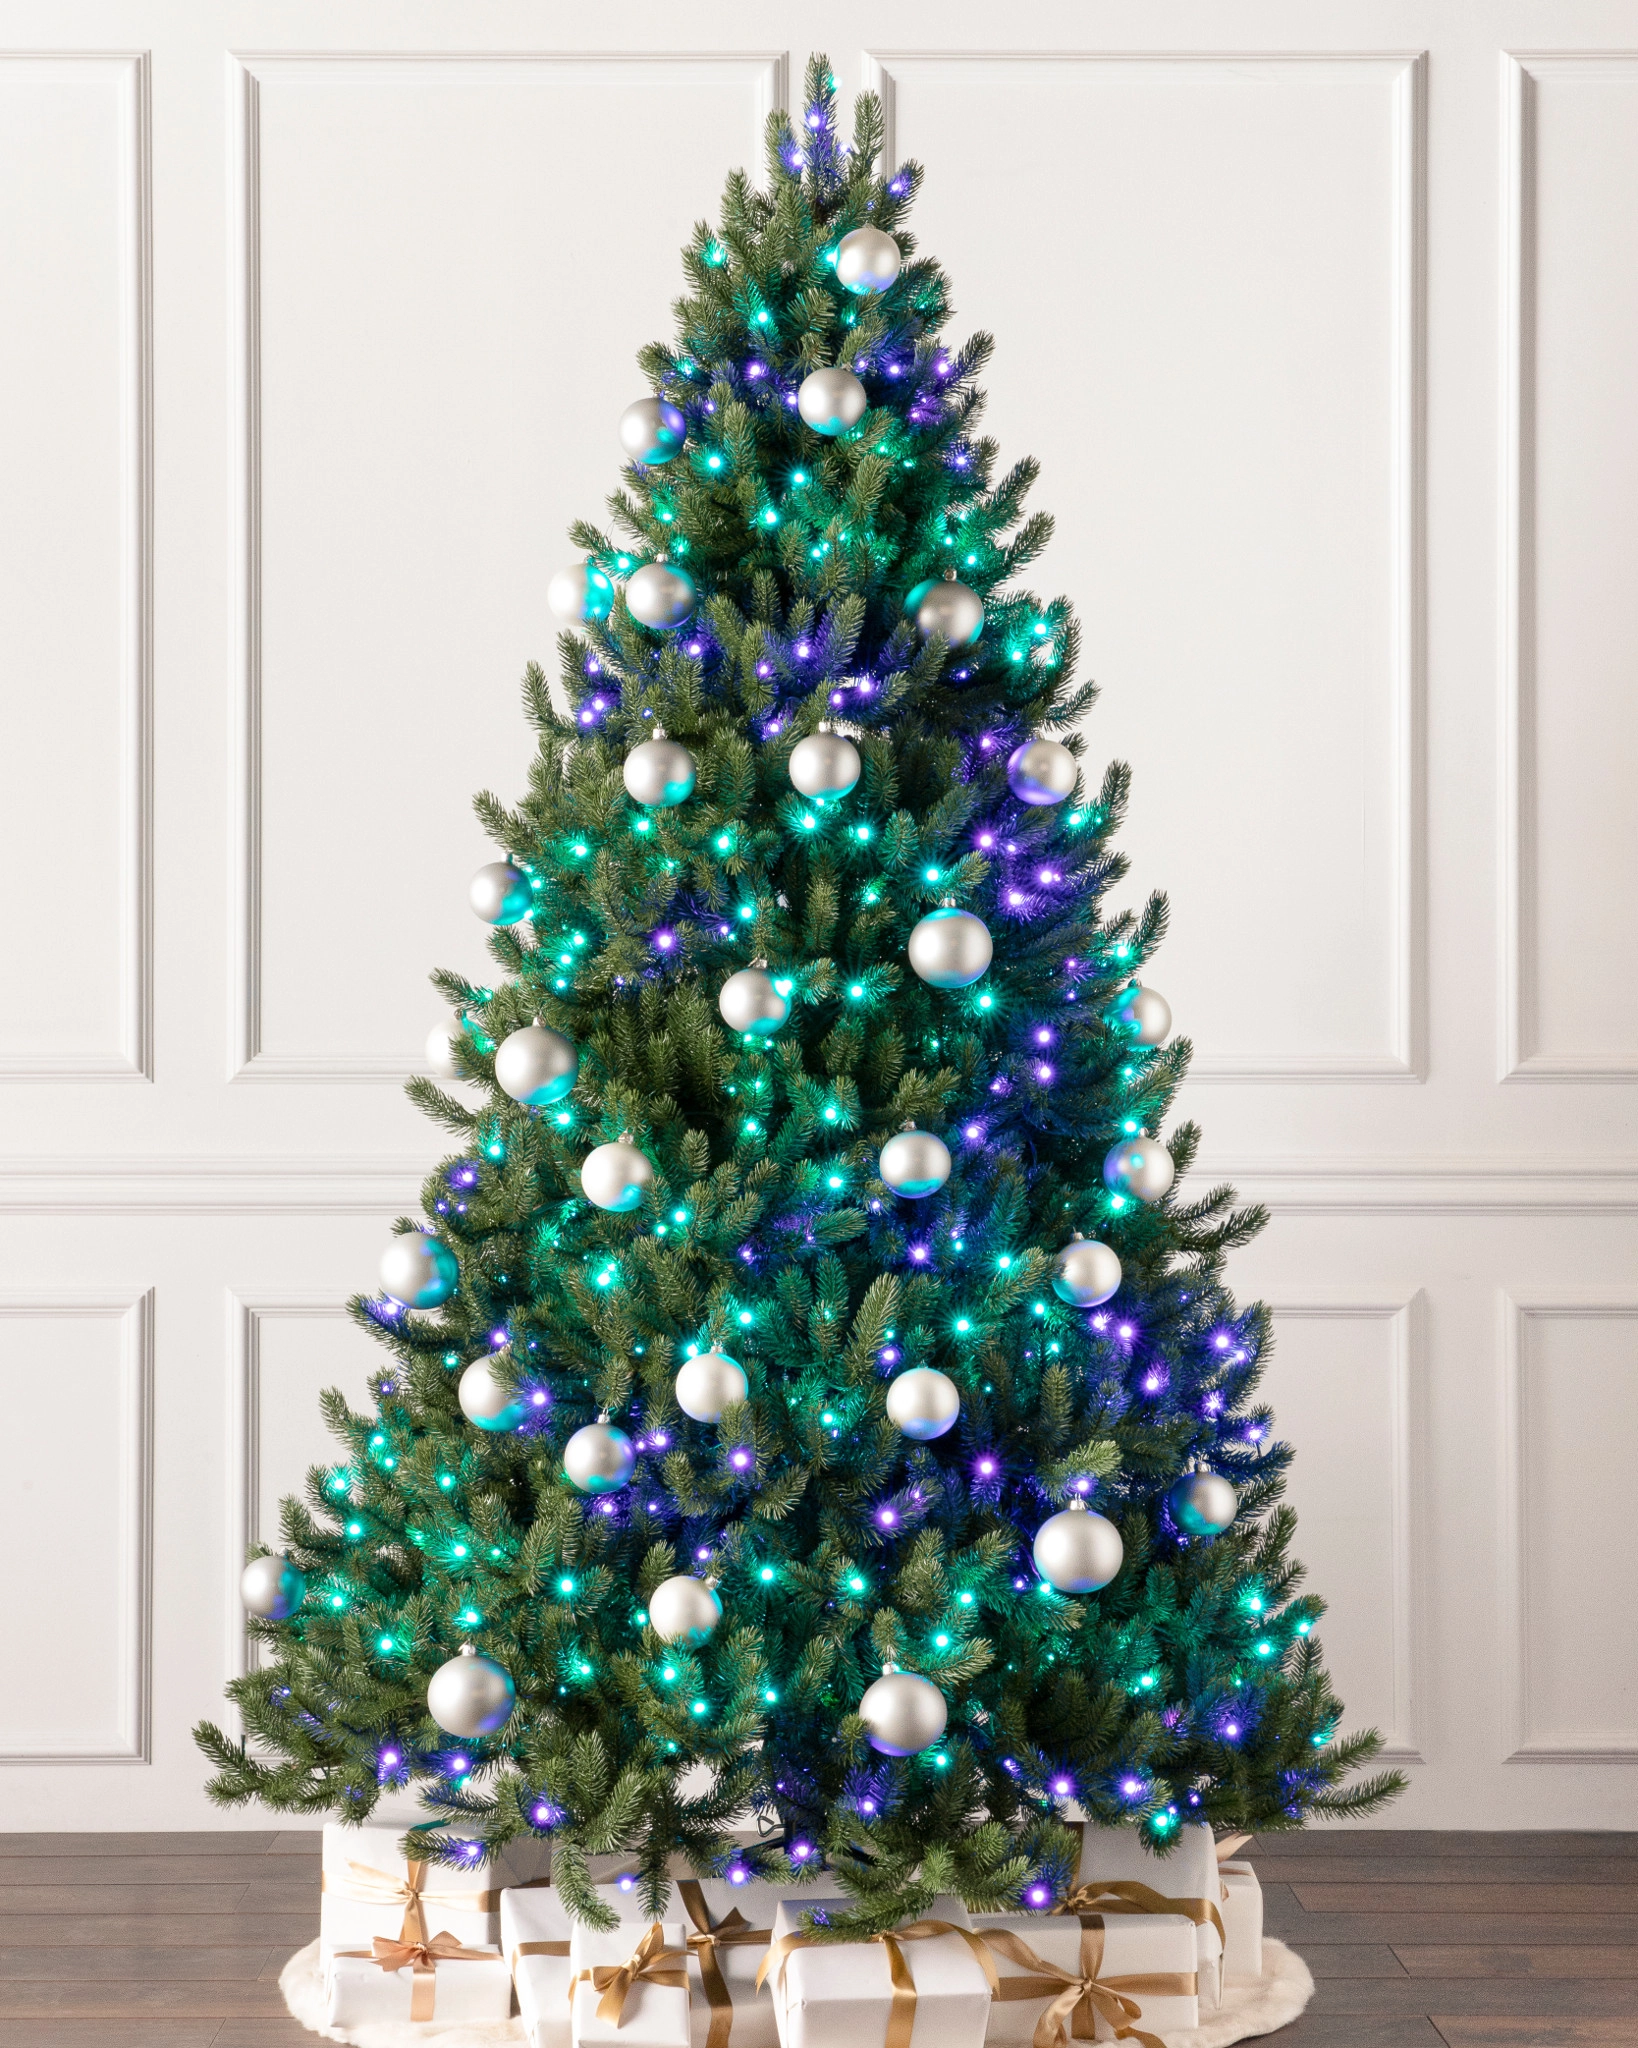 https://source.widen.net/content/bolqmz5q5g/webp/Vermont-White-Spruce-Artificial-Christmas-Tree_Twinkly_SSC.webp?position=c&color=ffffffff&quality=100&u=7mzq6p